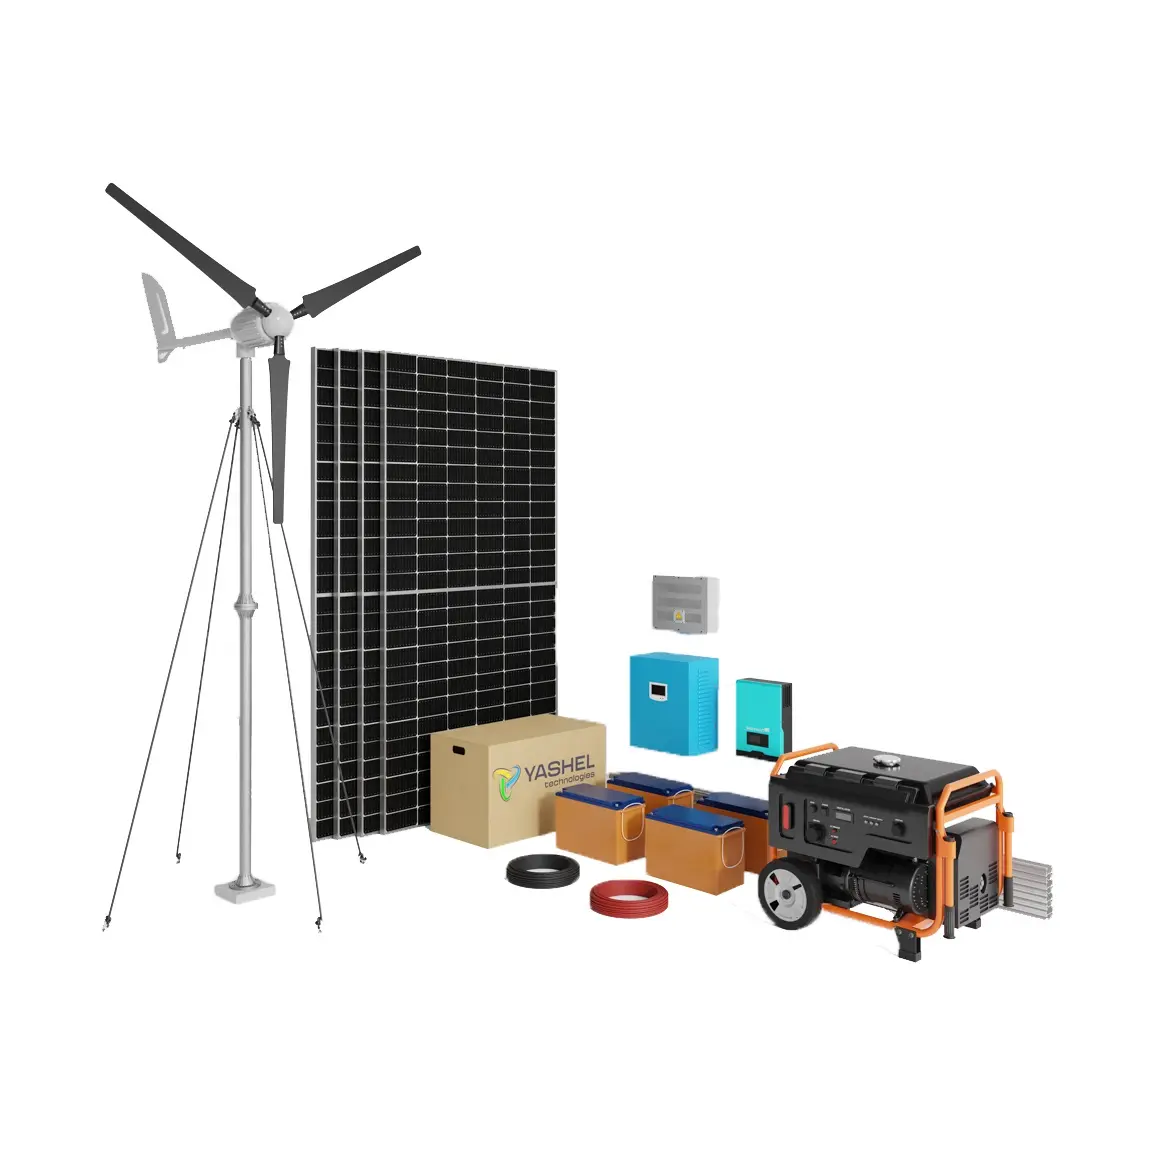 Гибридная дизель-солнечная электростанция YASHEL Hybrid FS 150 Автономная Солнечная система с резервным питанием для хранения энергии